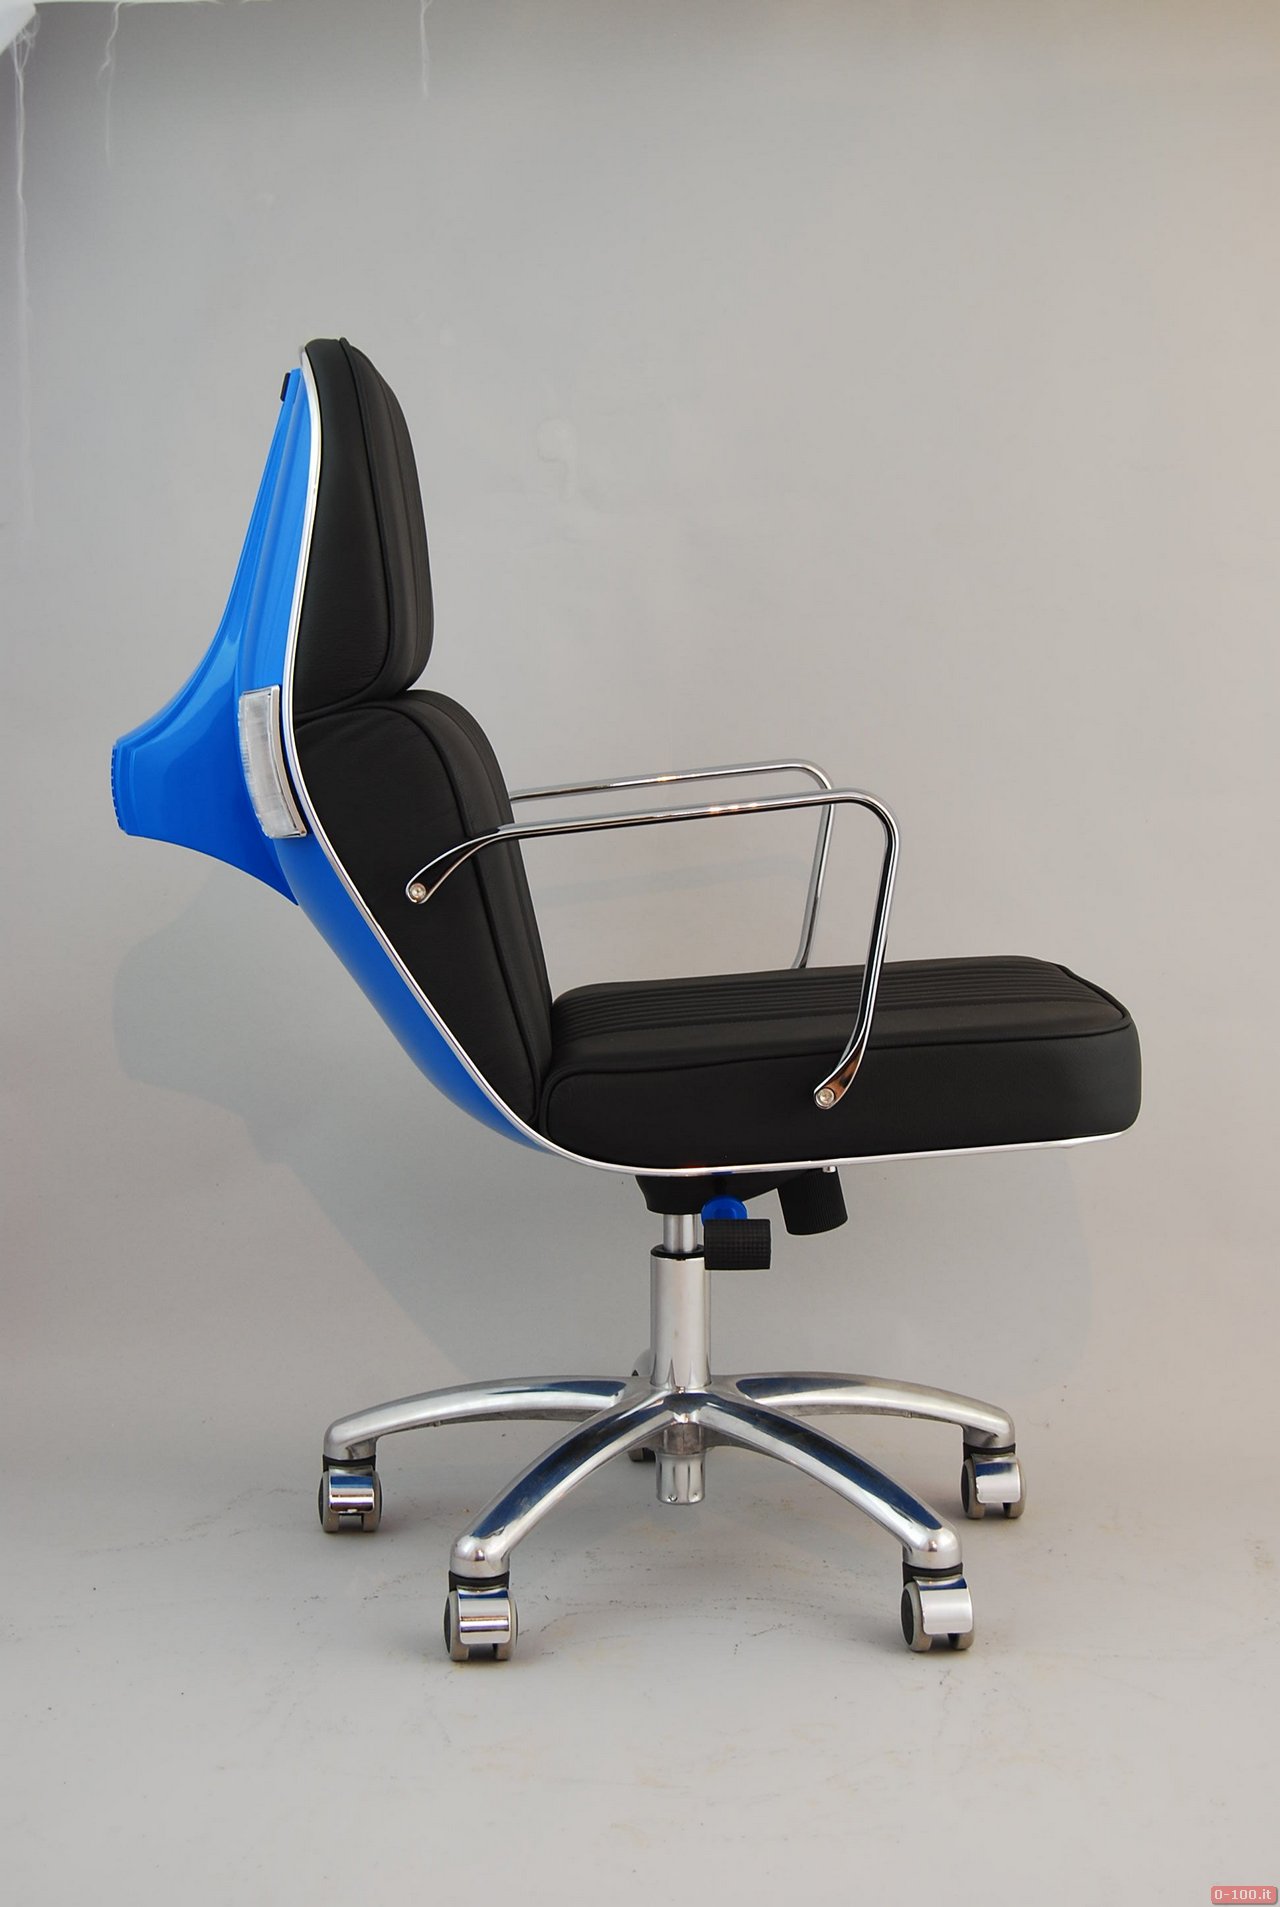 Vespa office chairs by Bel &Bel_0-100_6